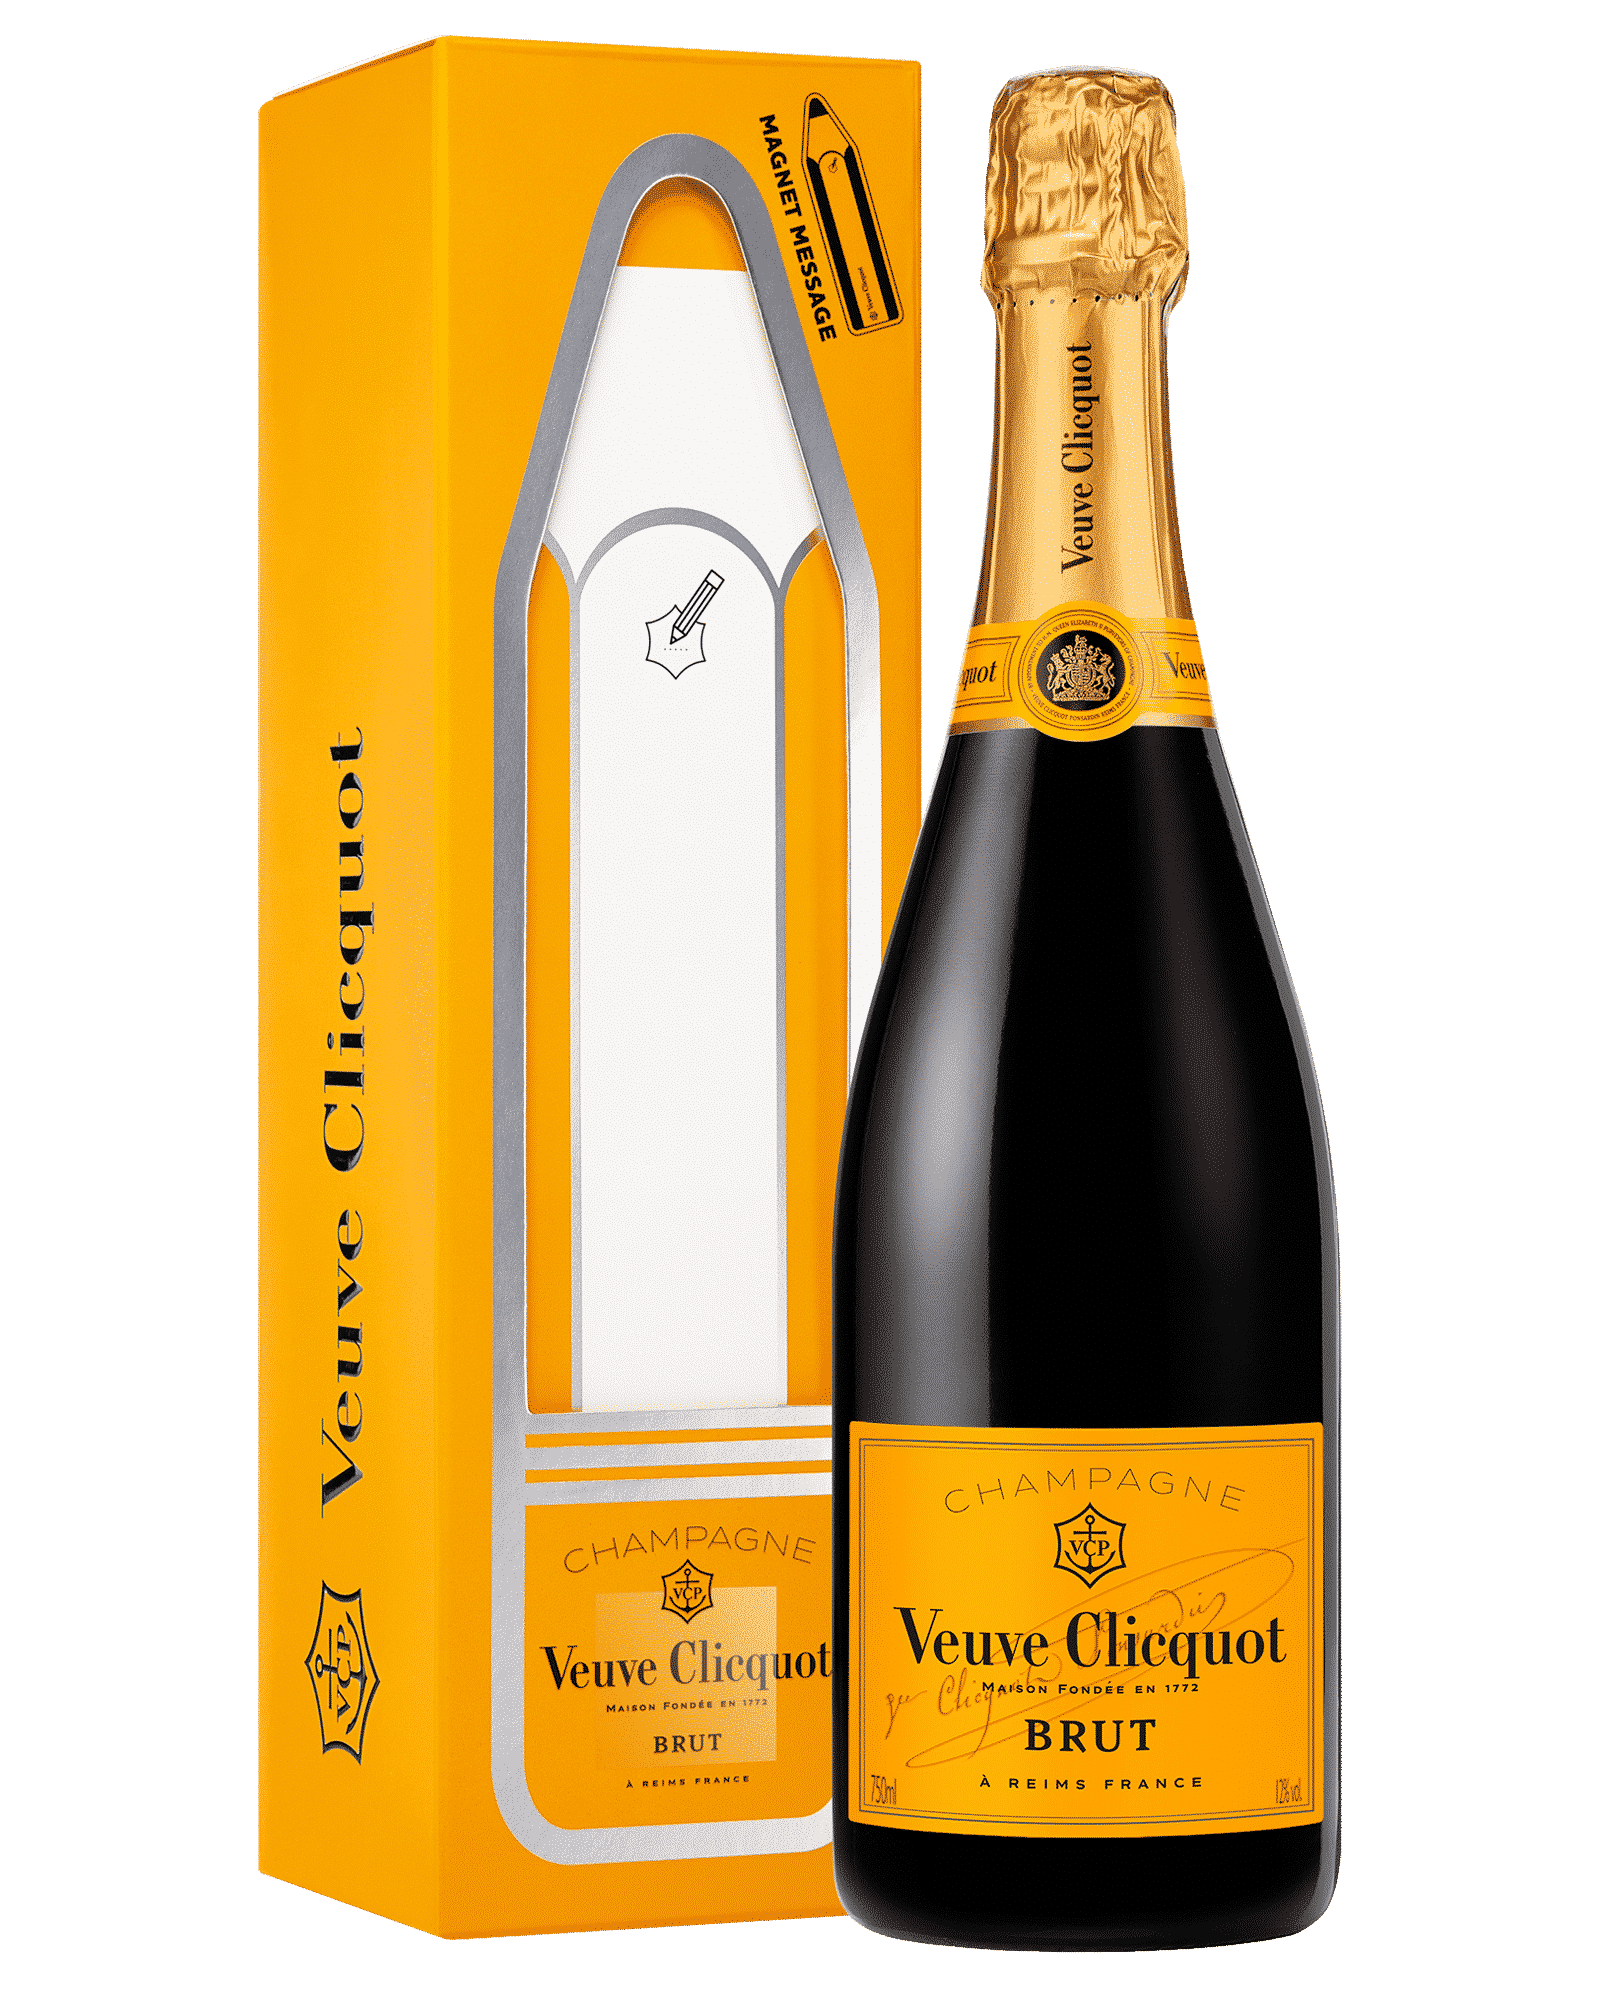 Шампанское Veuve Clicquot, Brut, Gift Box Magnet message 0,75 л. Шампанское Veuve Clicquot, Brut. Вдова Клико Понсардин брют. Просекко вдова Клико.